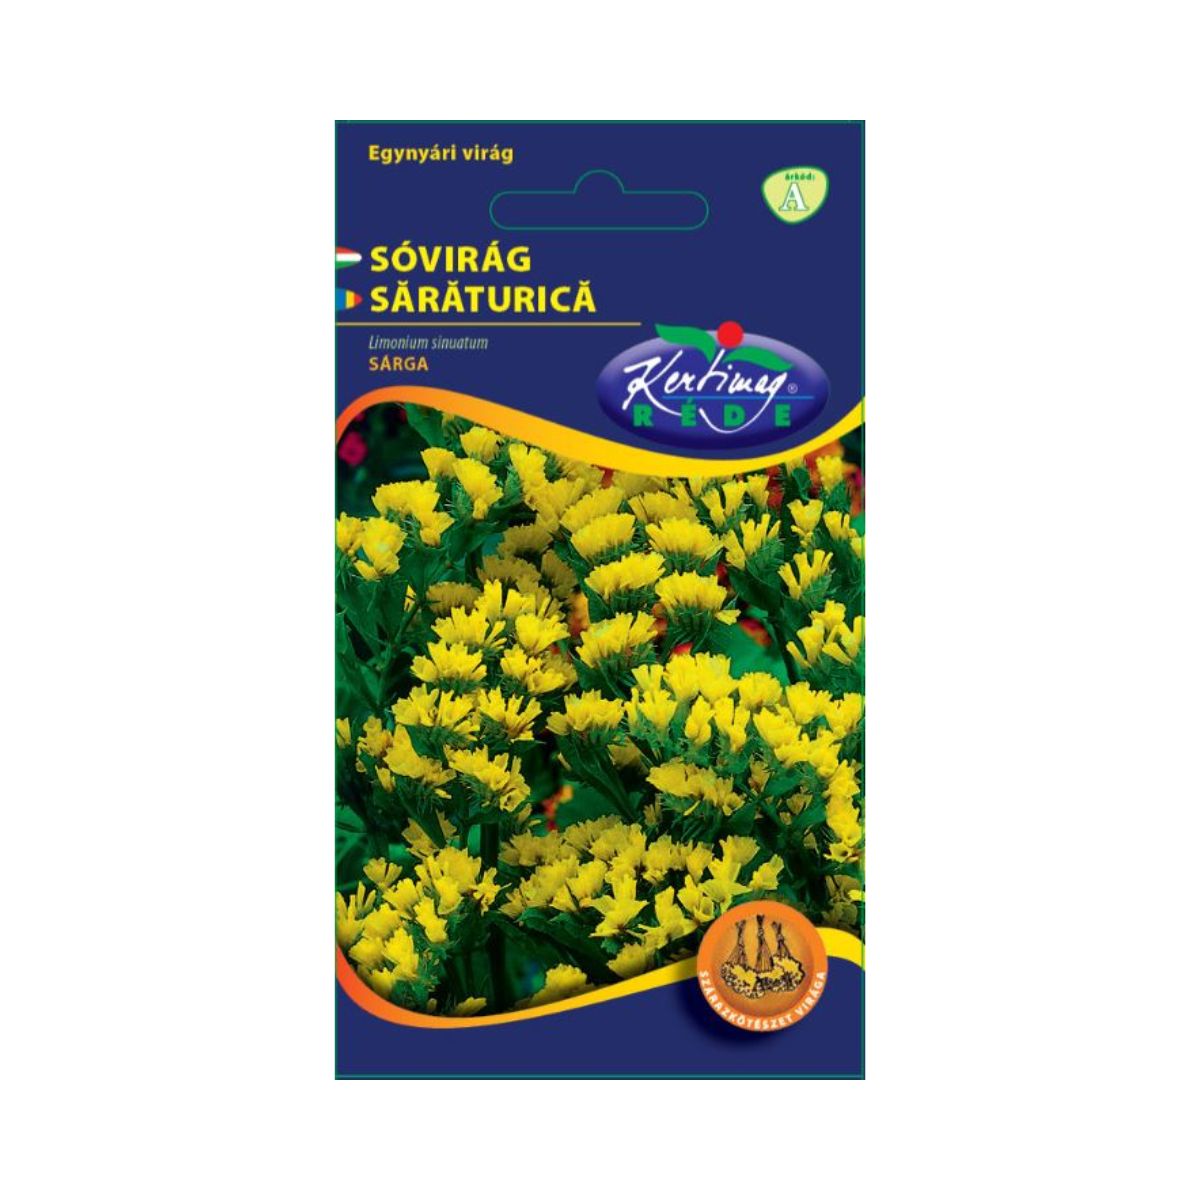 Seminte flori - Seminte de SARATURICA galben, KERTIMAG, hectarul.ro